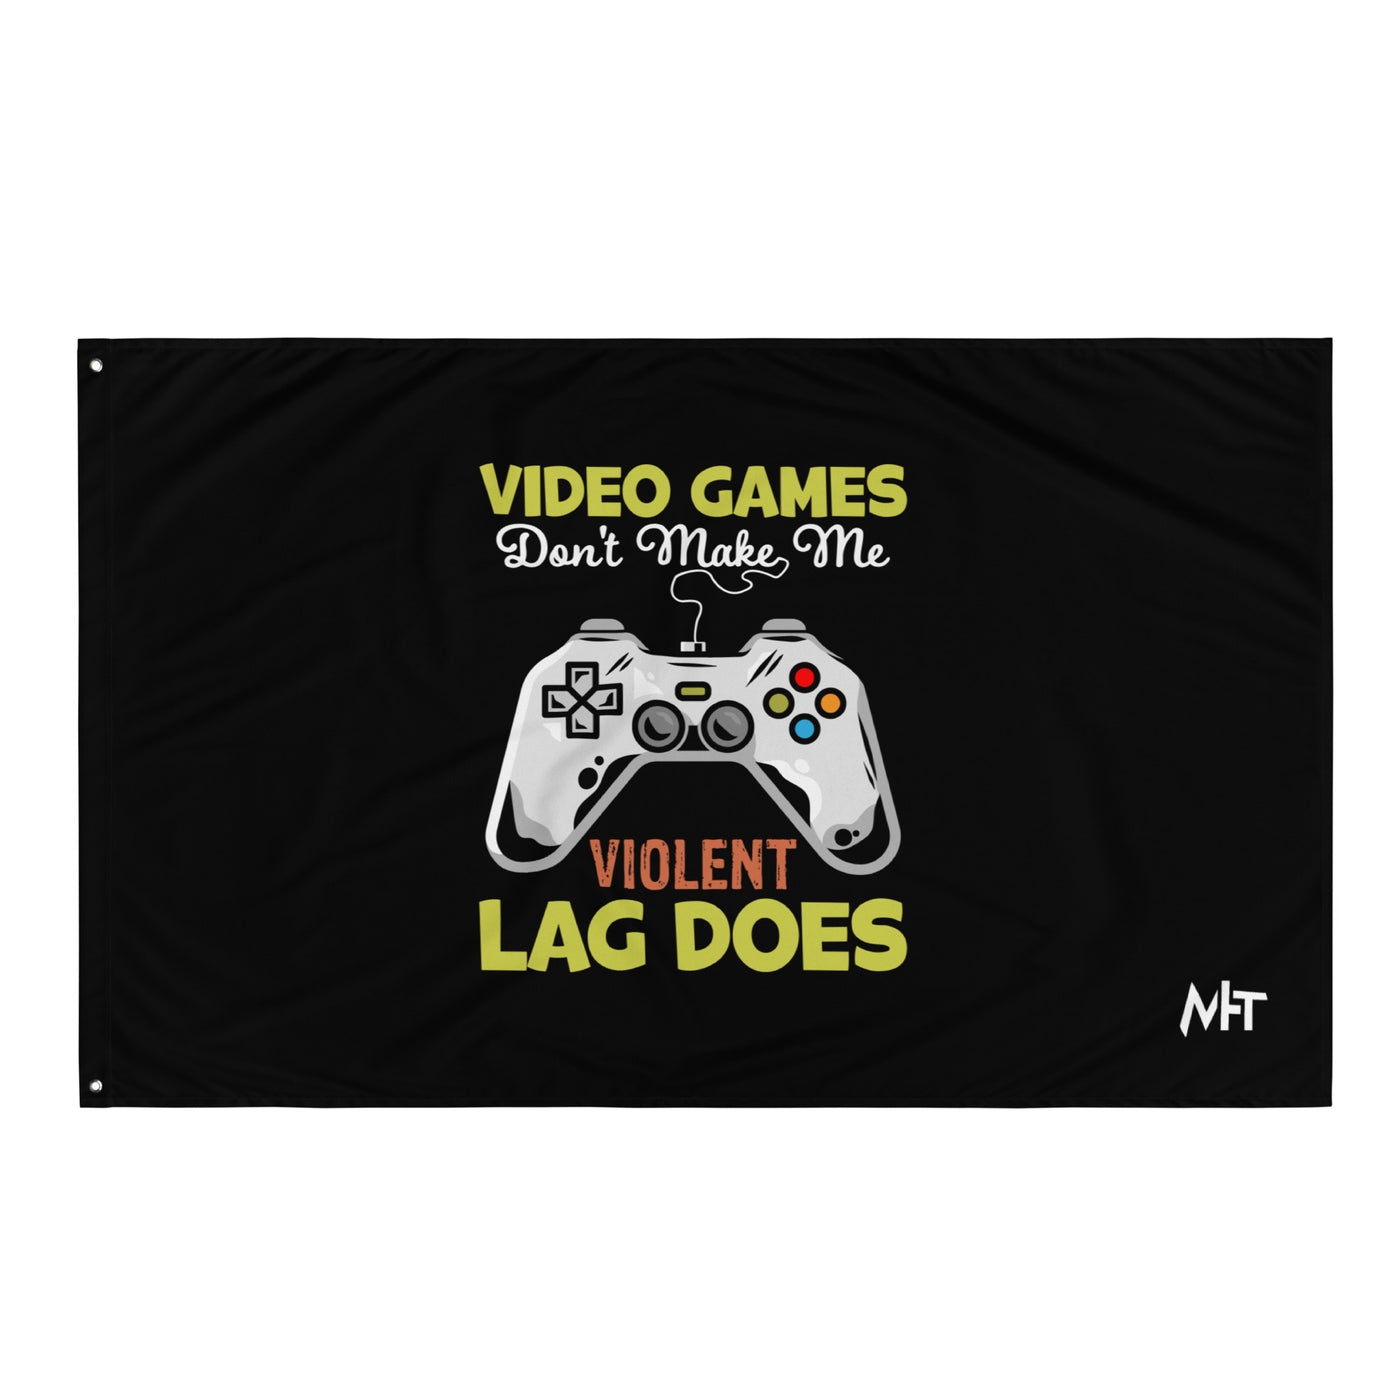 Video Games Lag does Make me Violent - Flag